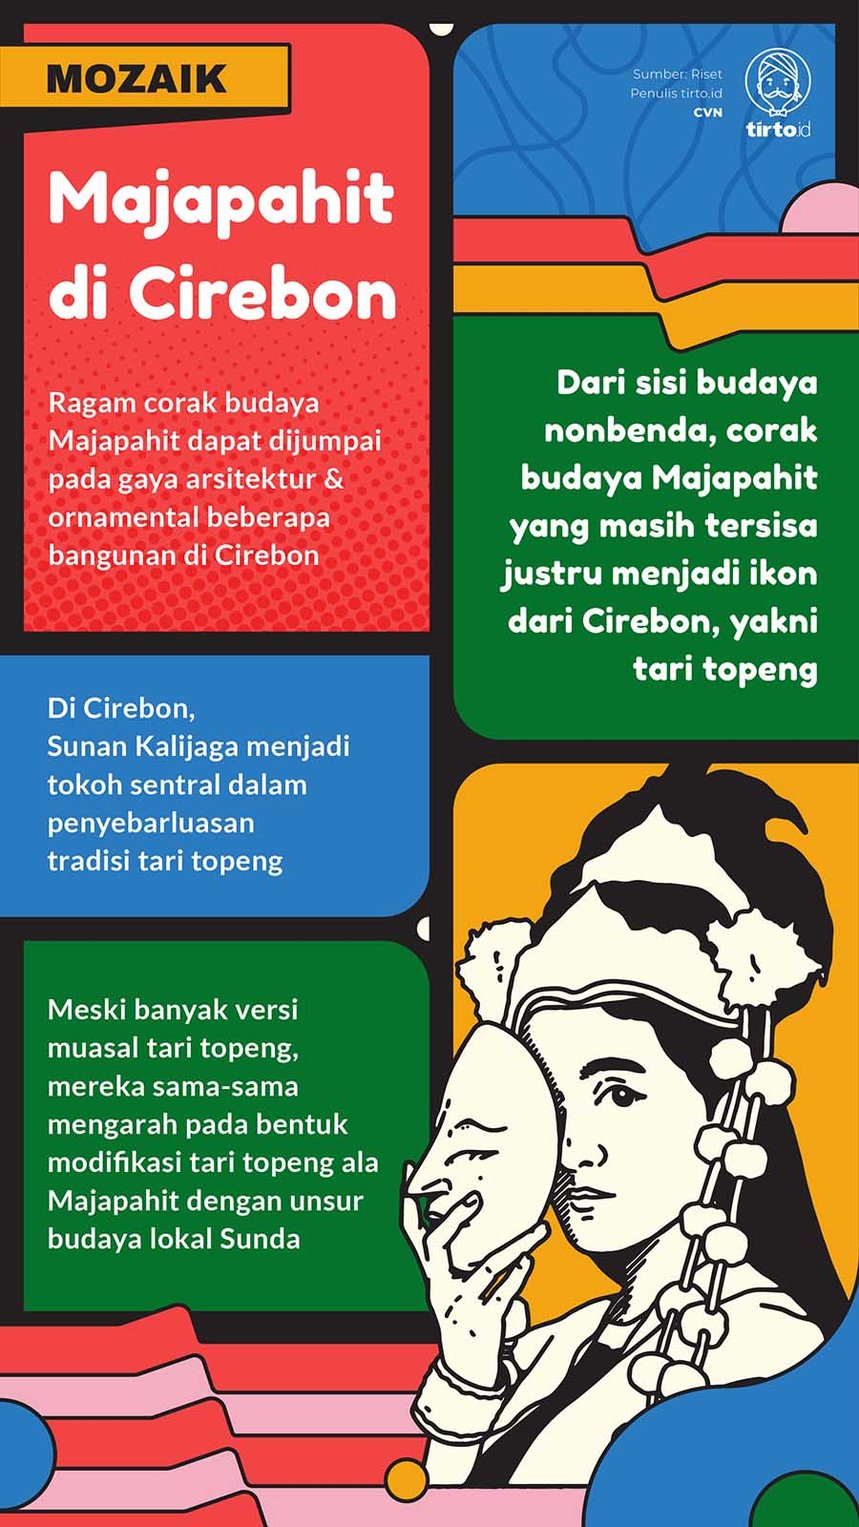 Infografik Mozaik Majapahit di Cirebon